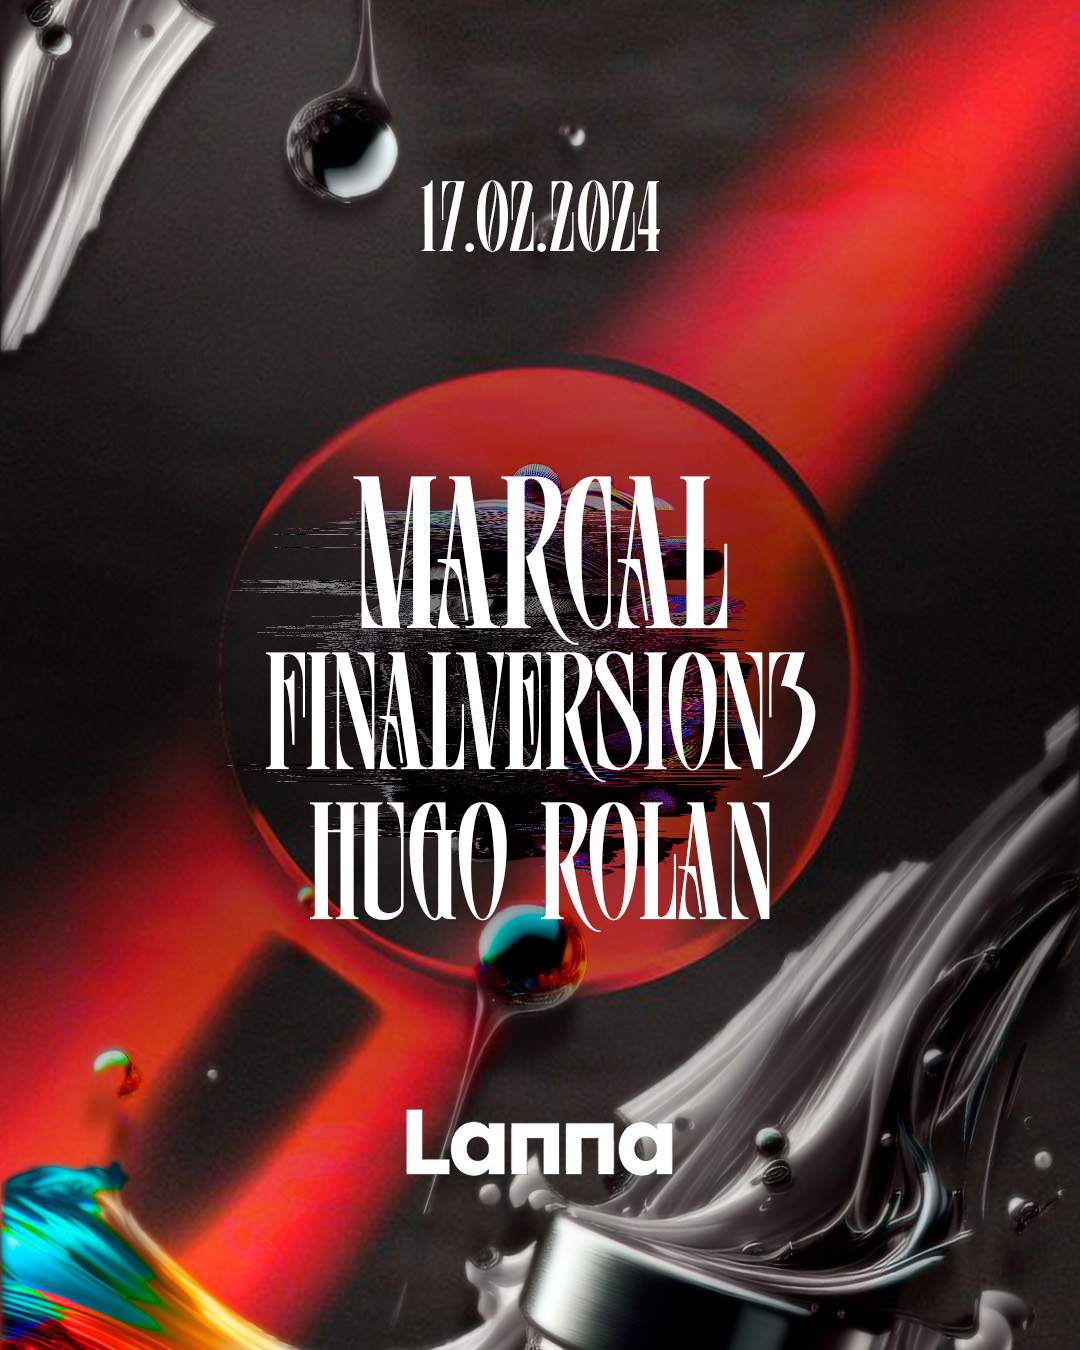 Lanna Club presenta Marcal, Finalversion3, Hugo Rolan - フライヤー表